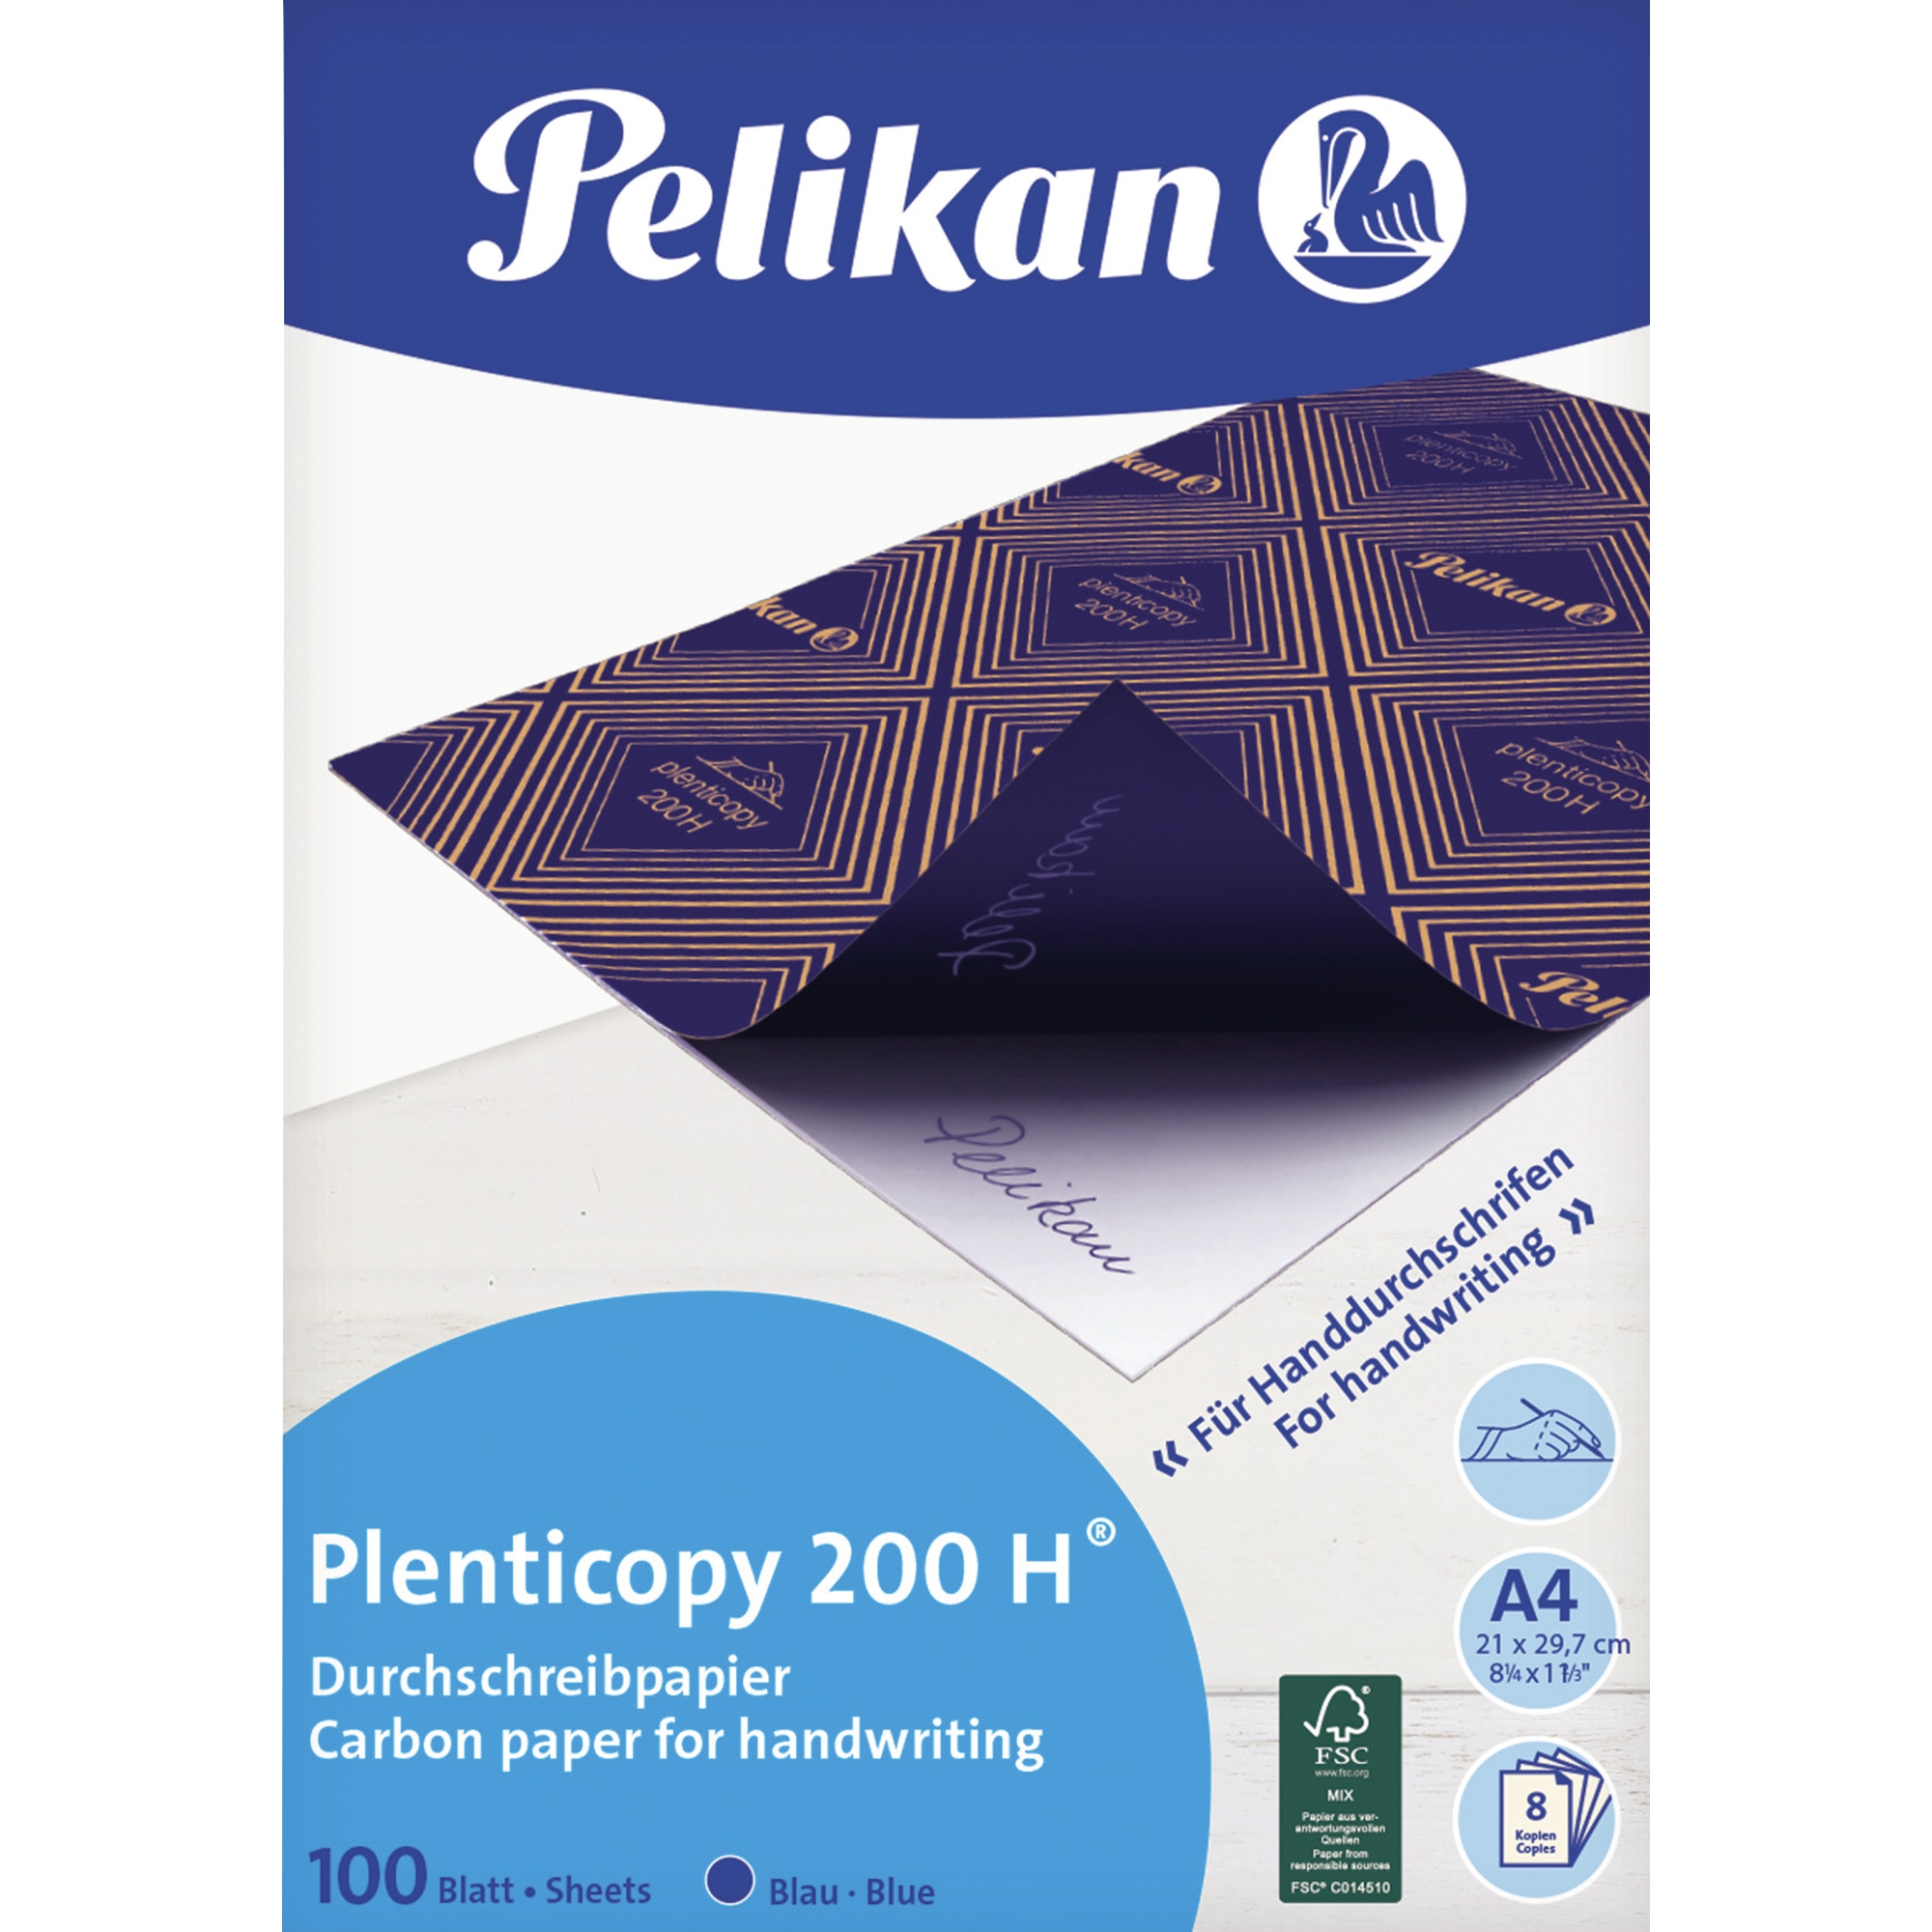 Pelikan Handdurchschreibepapier plenticopy 200 H 100 Blt.